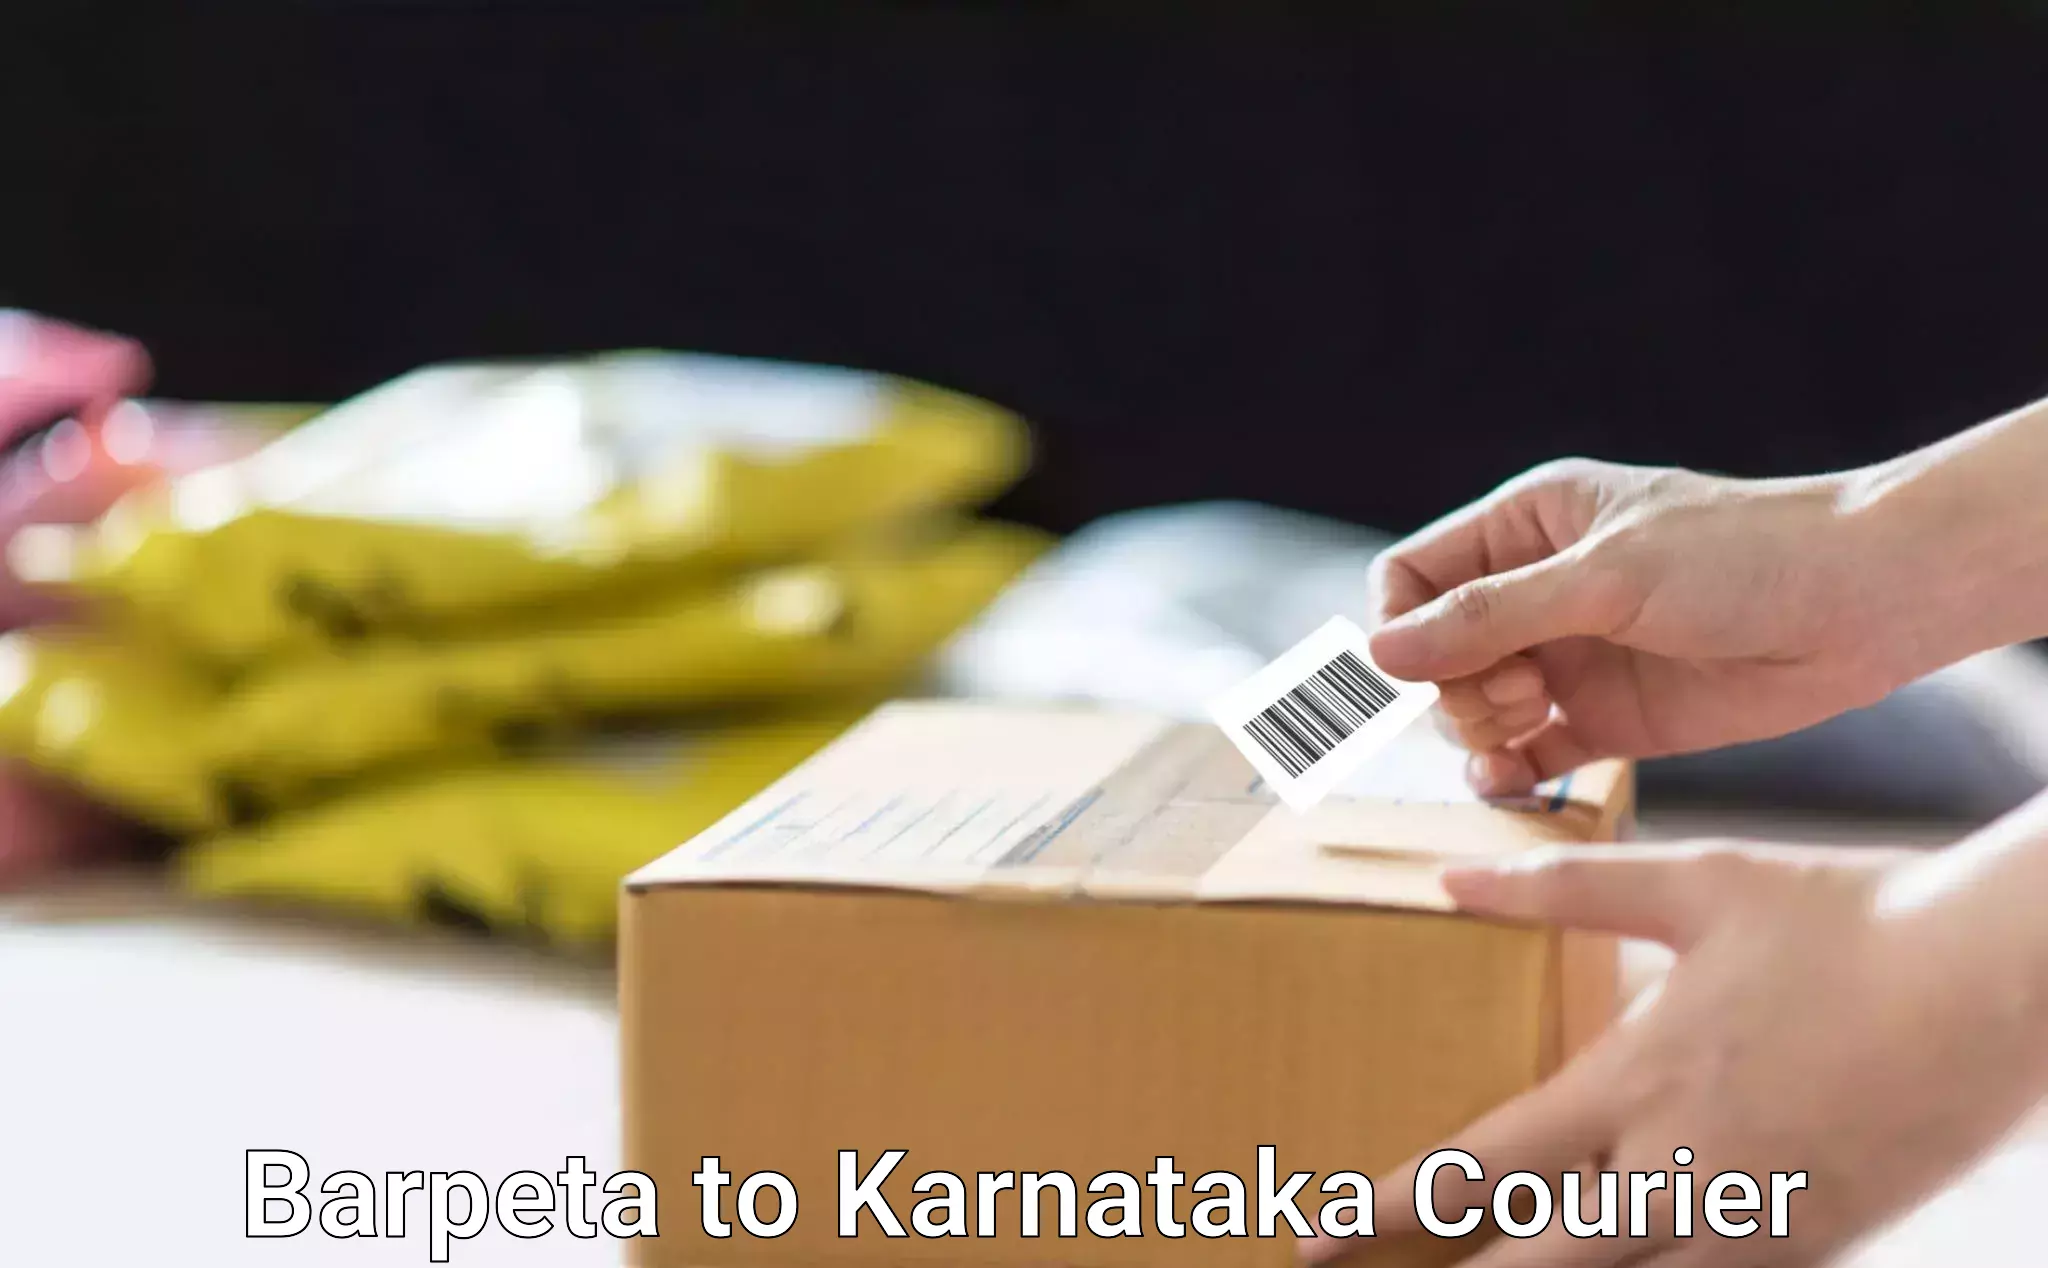 E-commerce logistics support Barpeta to Karnataka